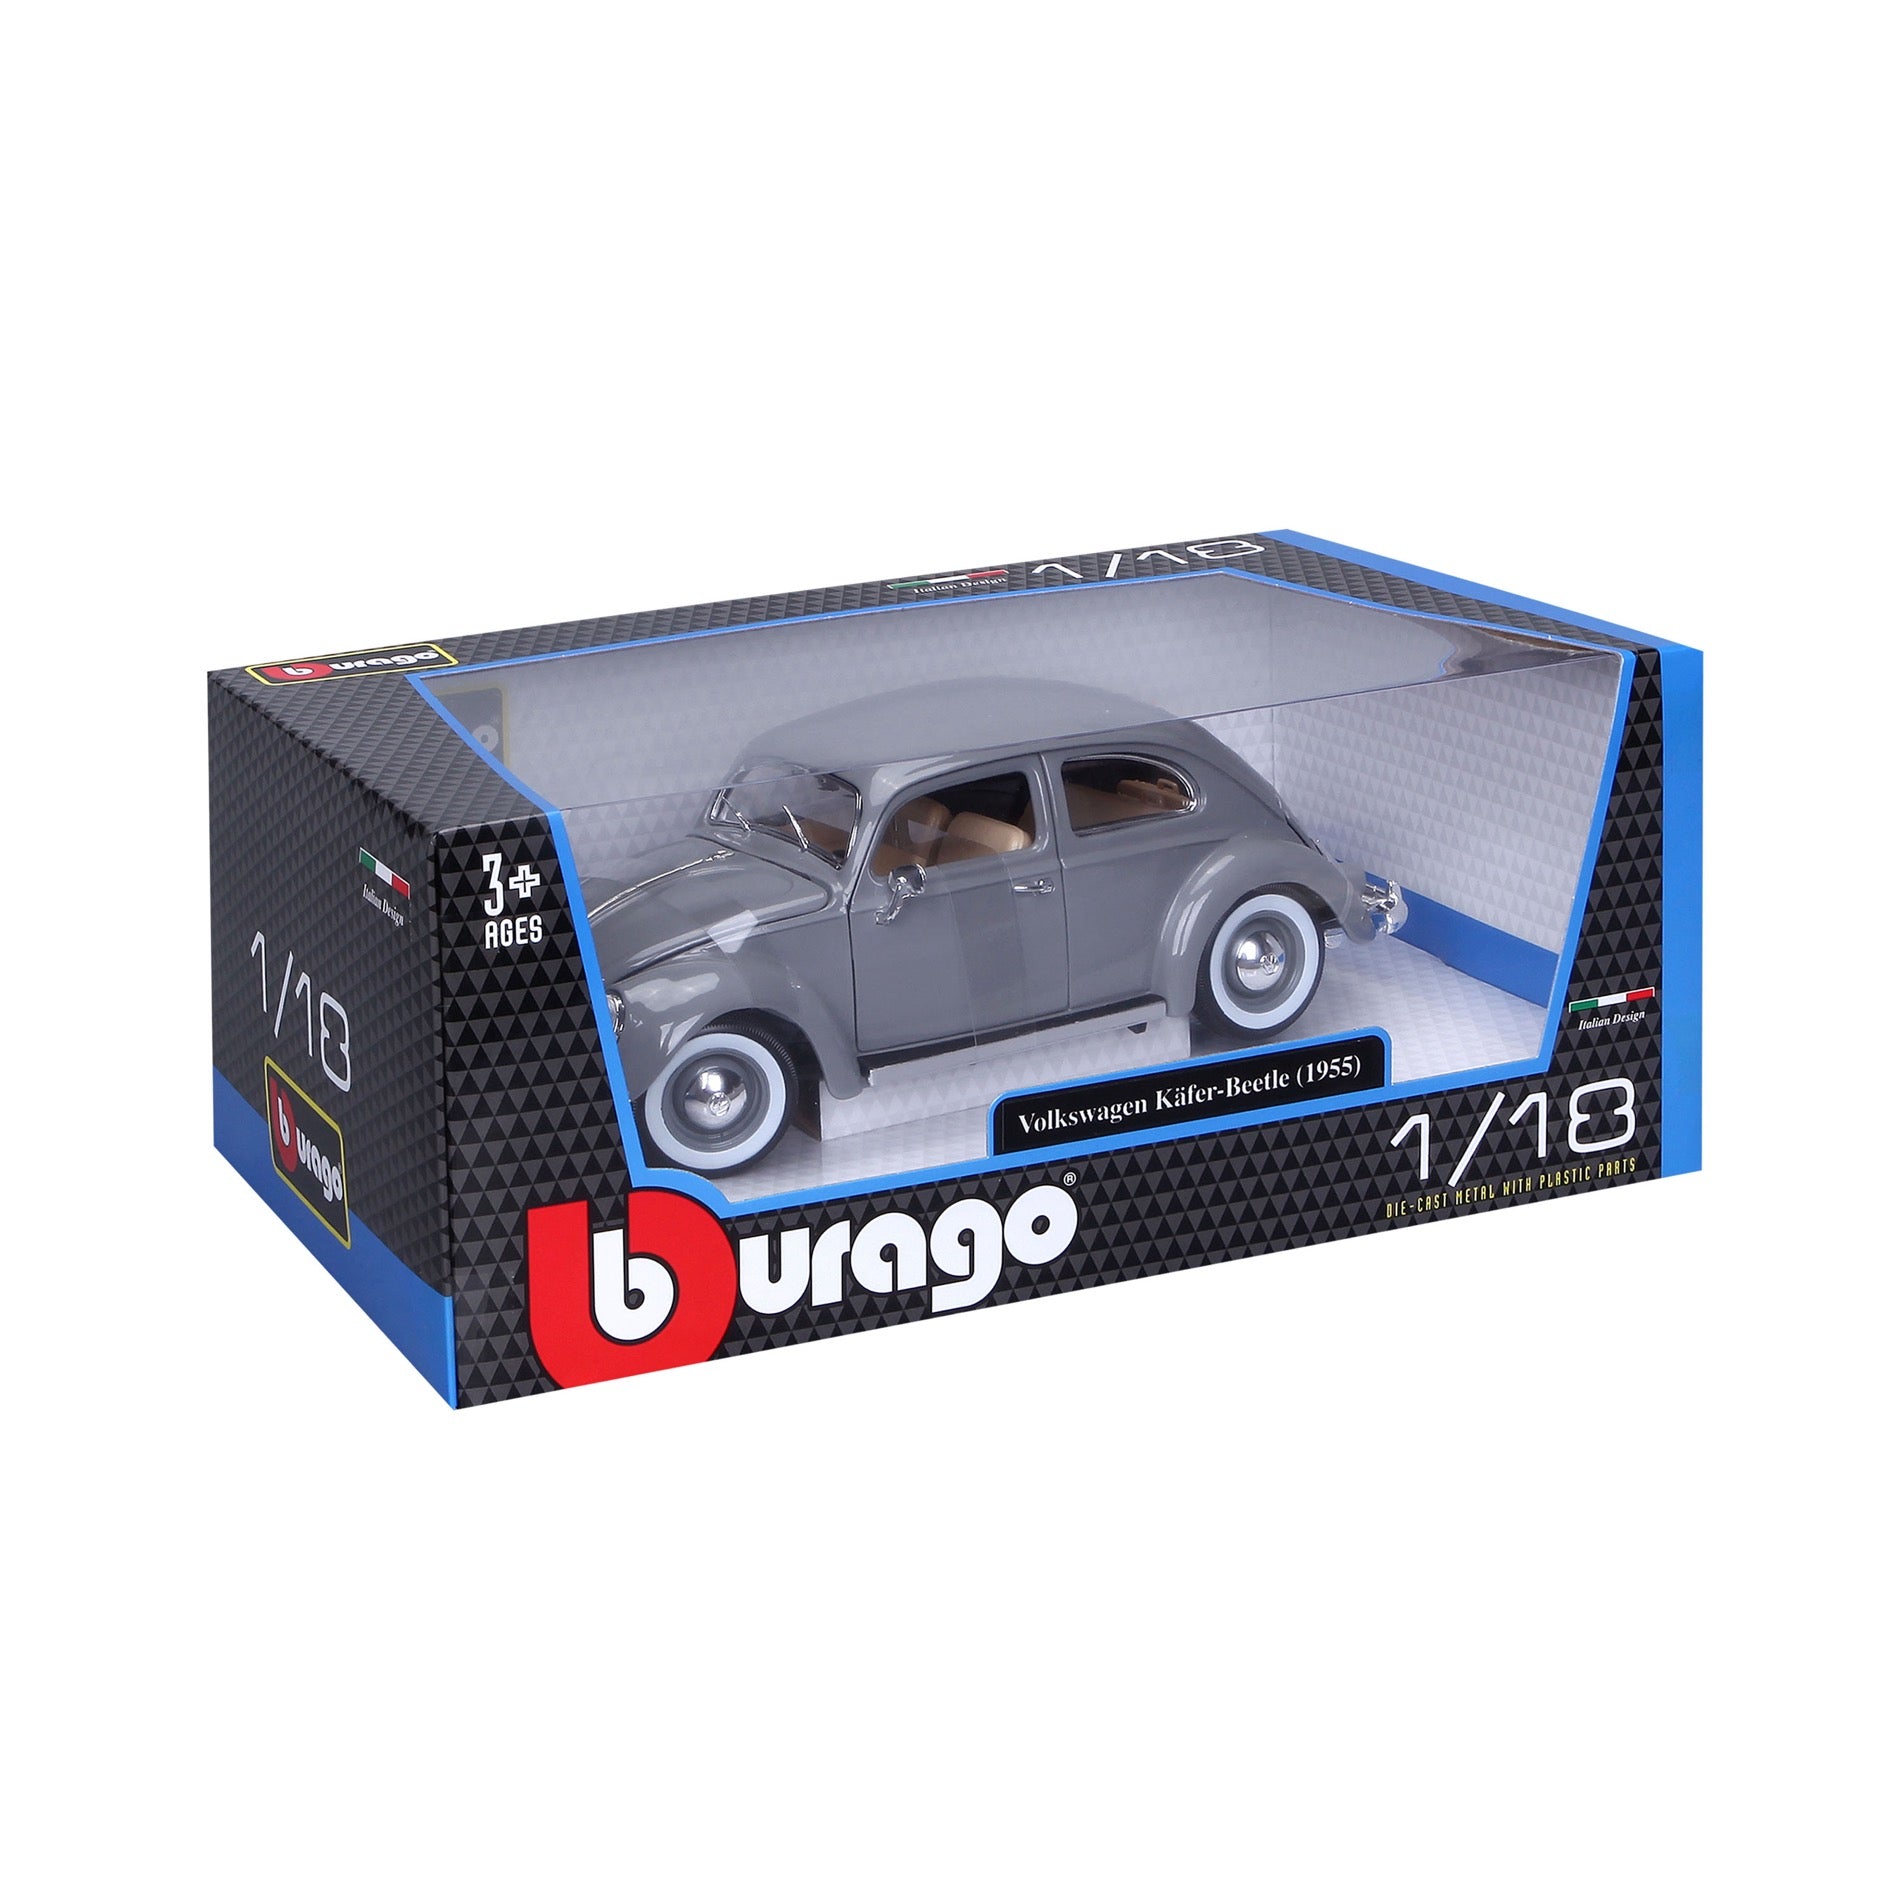 8) Burago Die Cast Model Cars 1/18 & 1/20 Scale